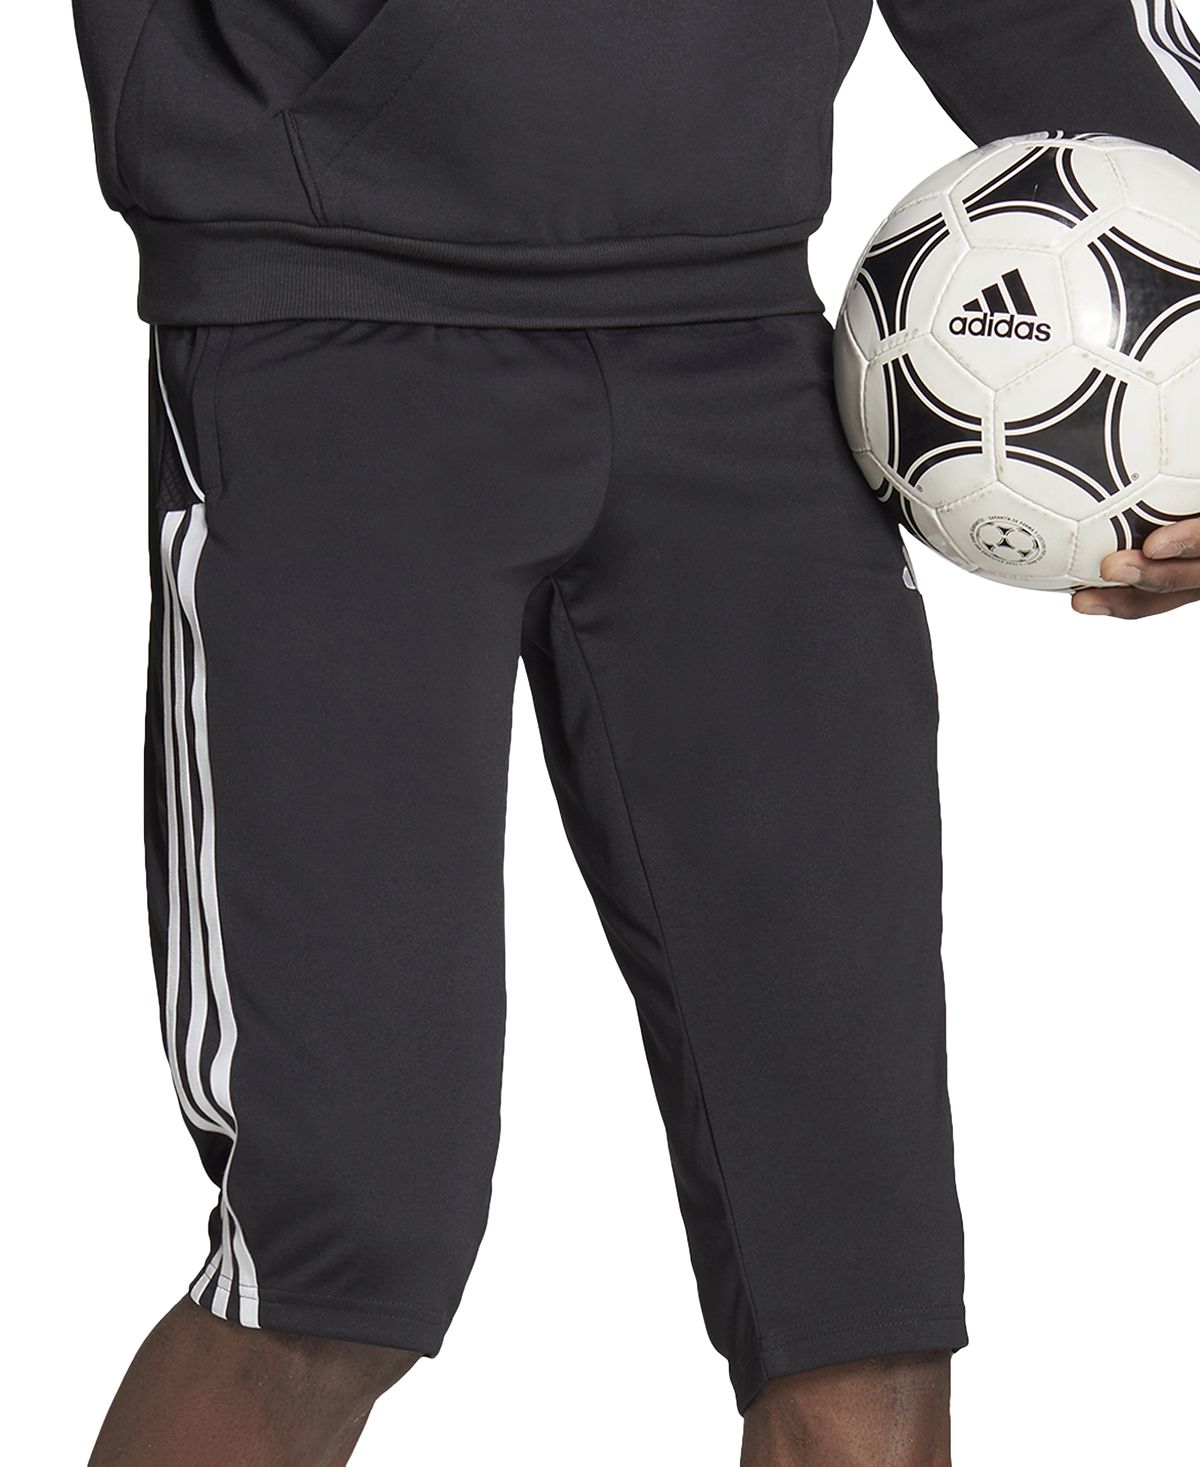 Мужские джоггеры узкого кроя Tiro 23 League Performance с 3 полосками и размером 3/4 adidas